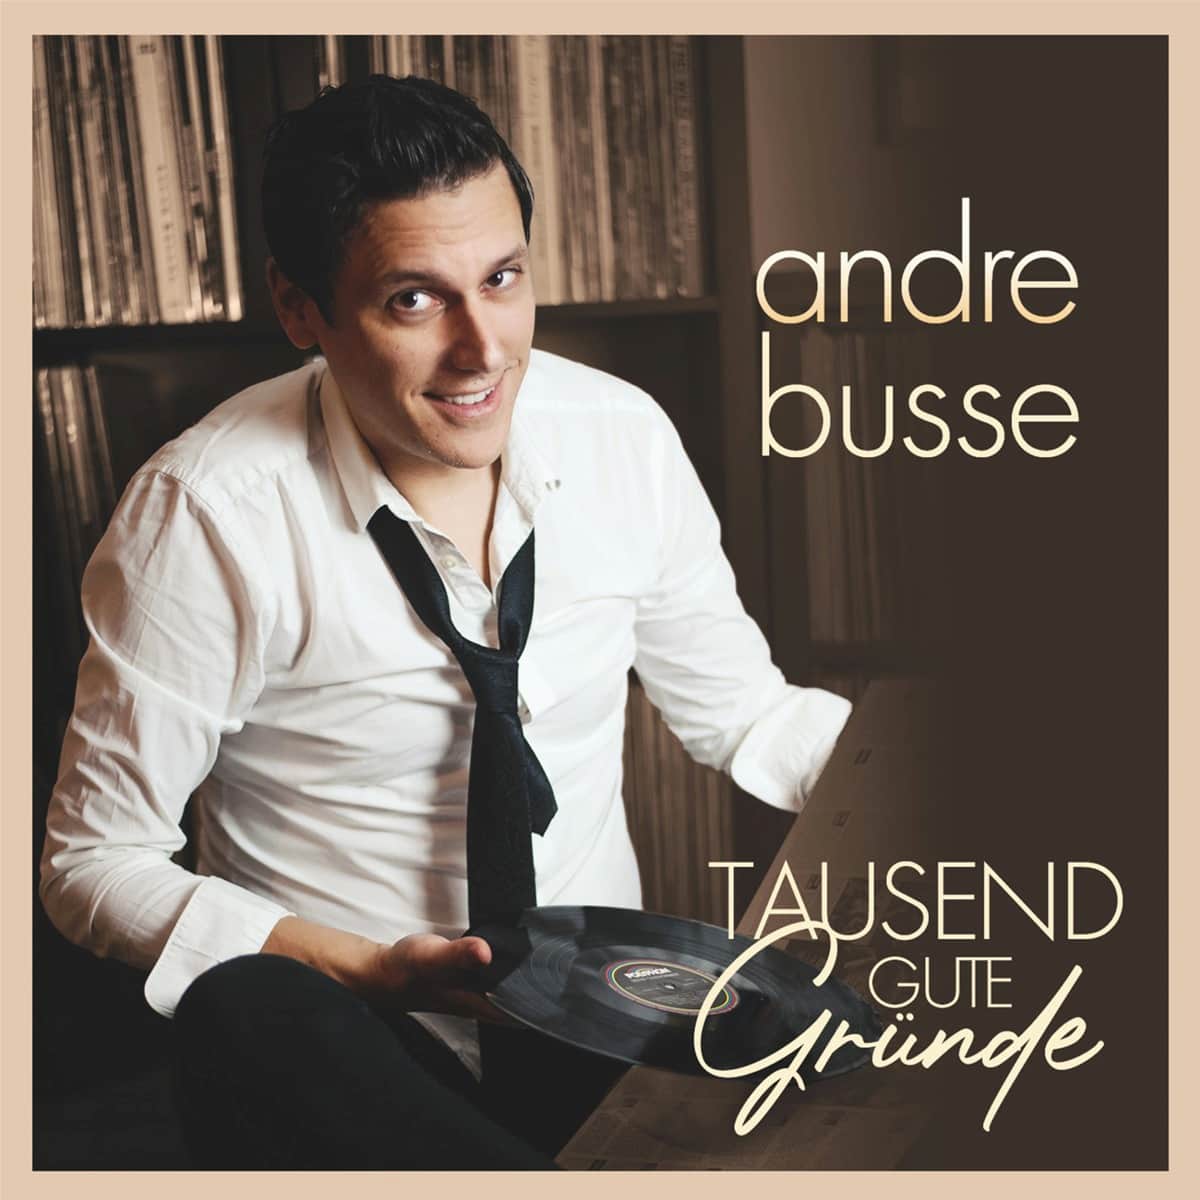 Andre Busse - Schlager “1000 gute Gründe” veröffentlicht